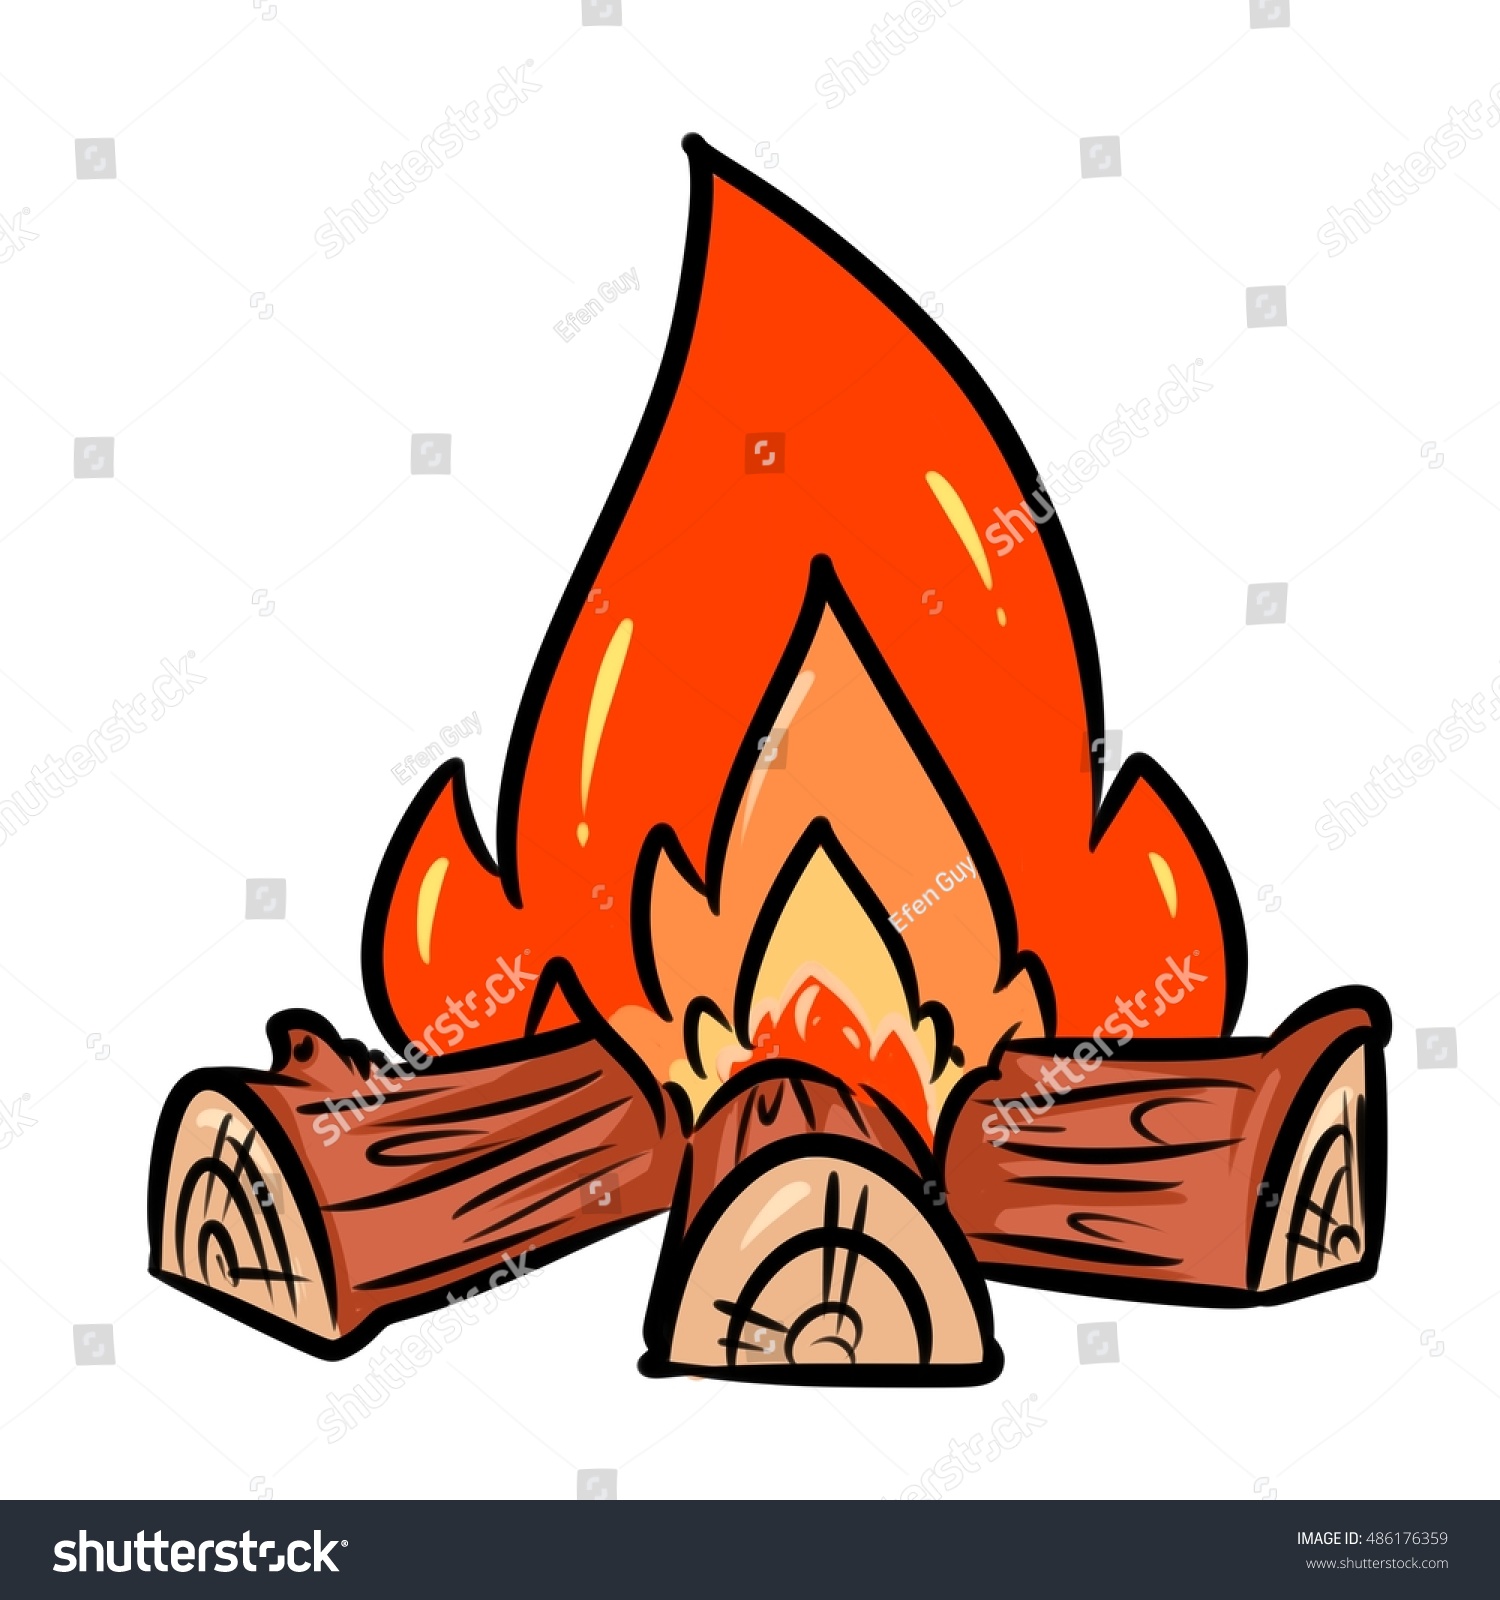 Огонь в камине рисунок